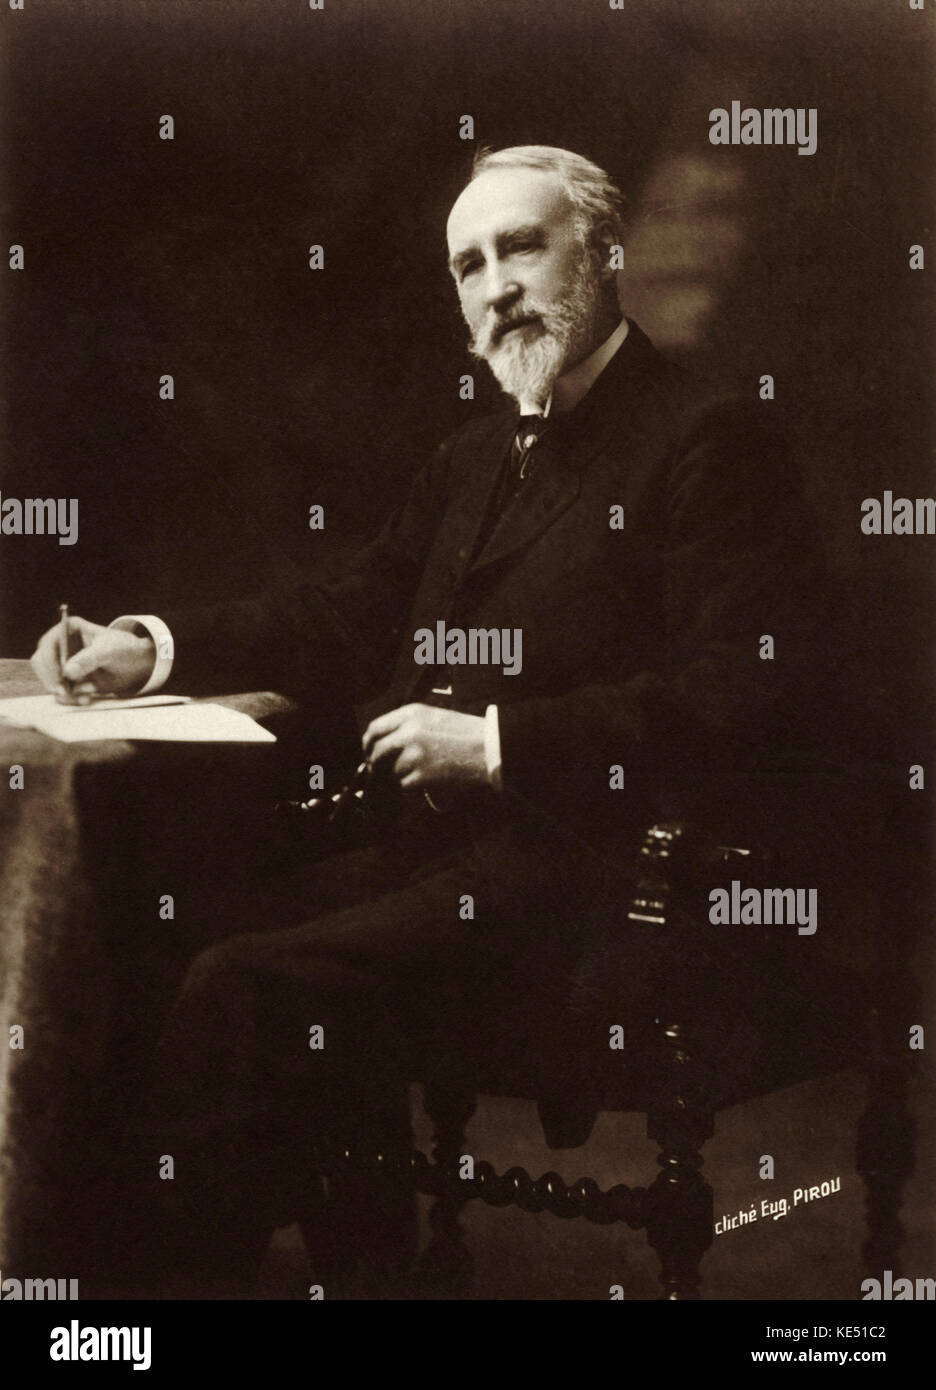 Théodore Dubois - der französische Komponist sitzen am Schreibtisch TD: 24. August 1837 - 11. Juni 1924 Gewinner des Prix de Rome 1861. Foto Postkarte. Stockfoto